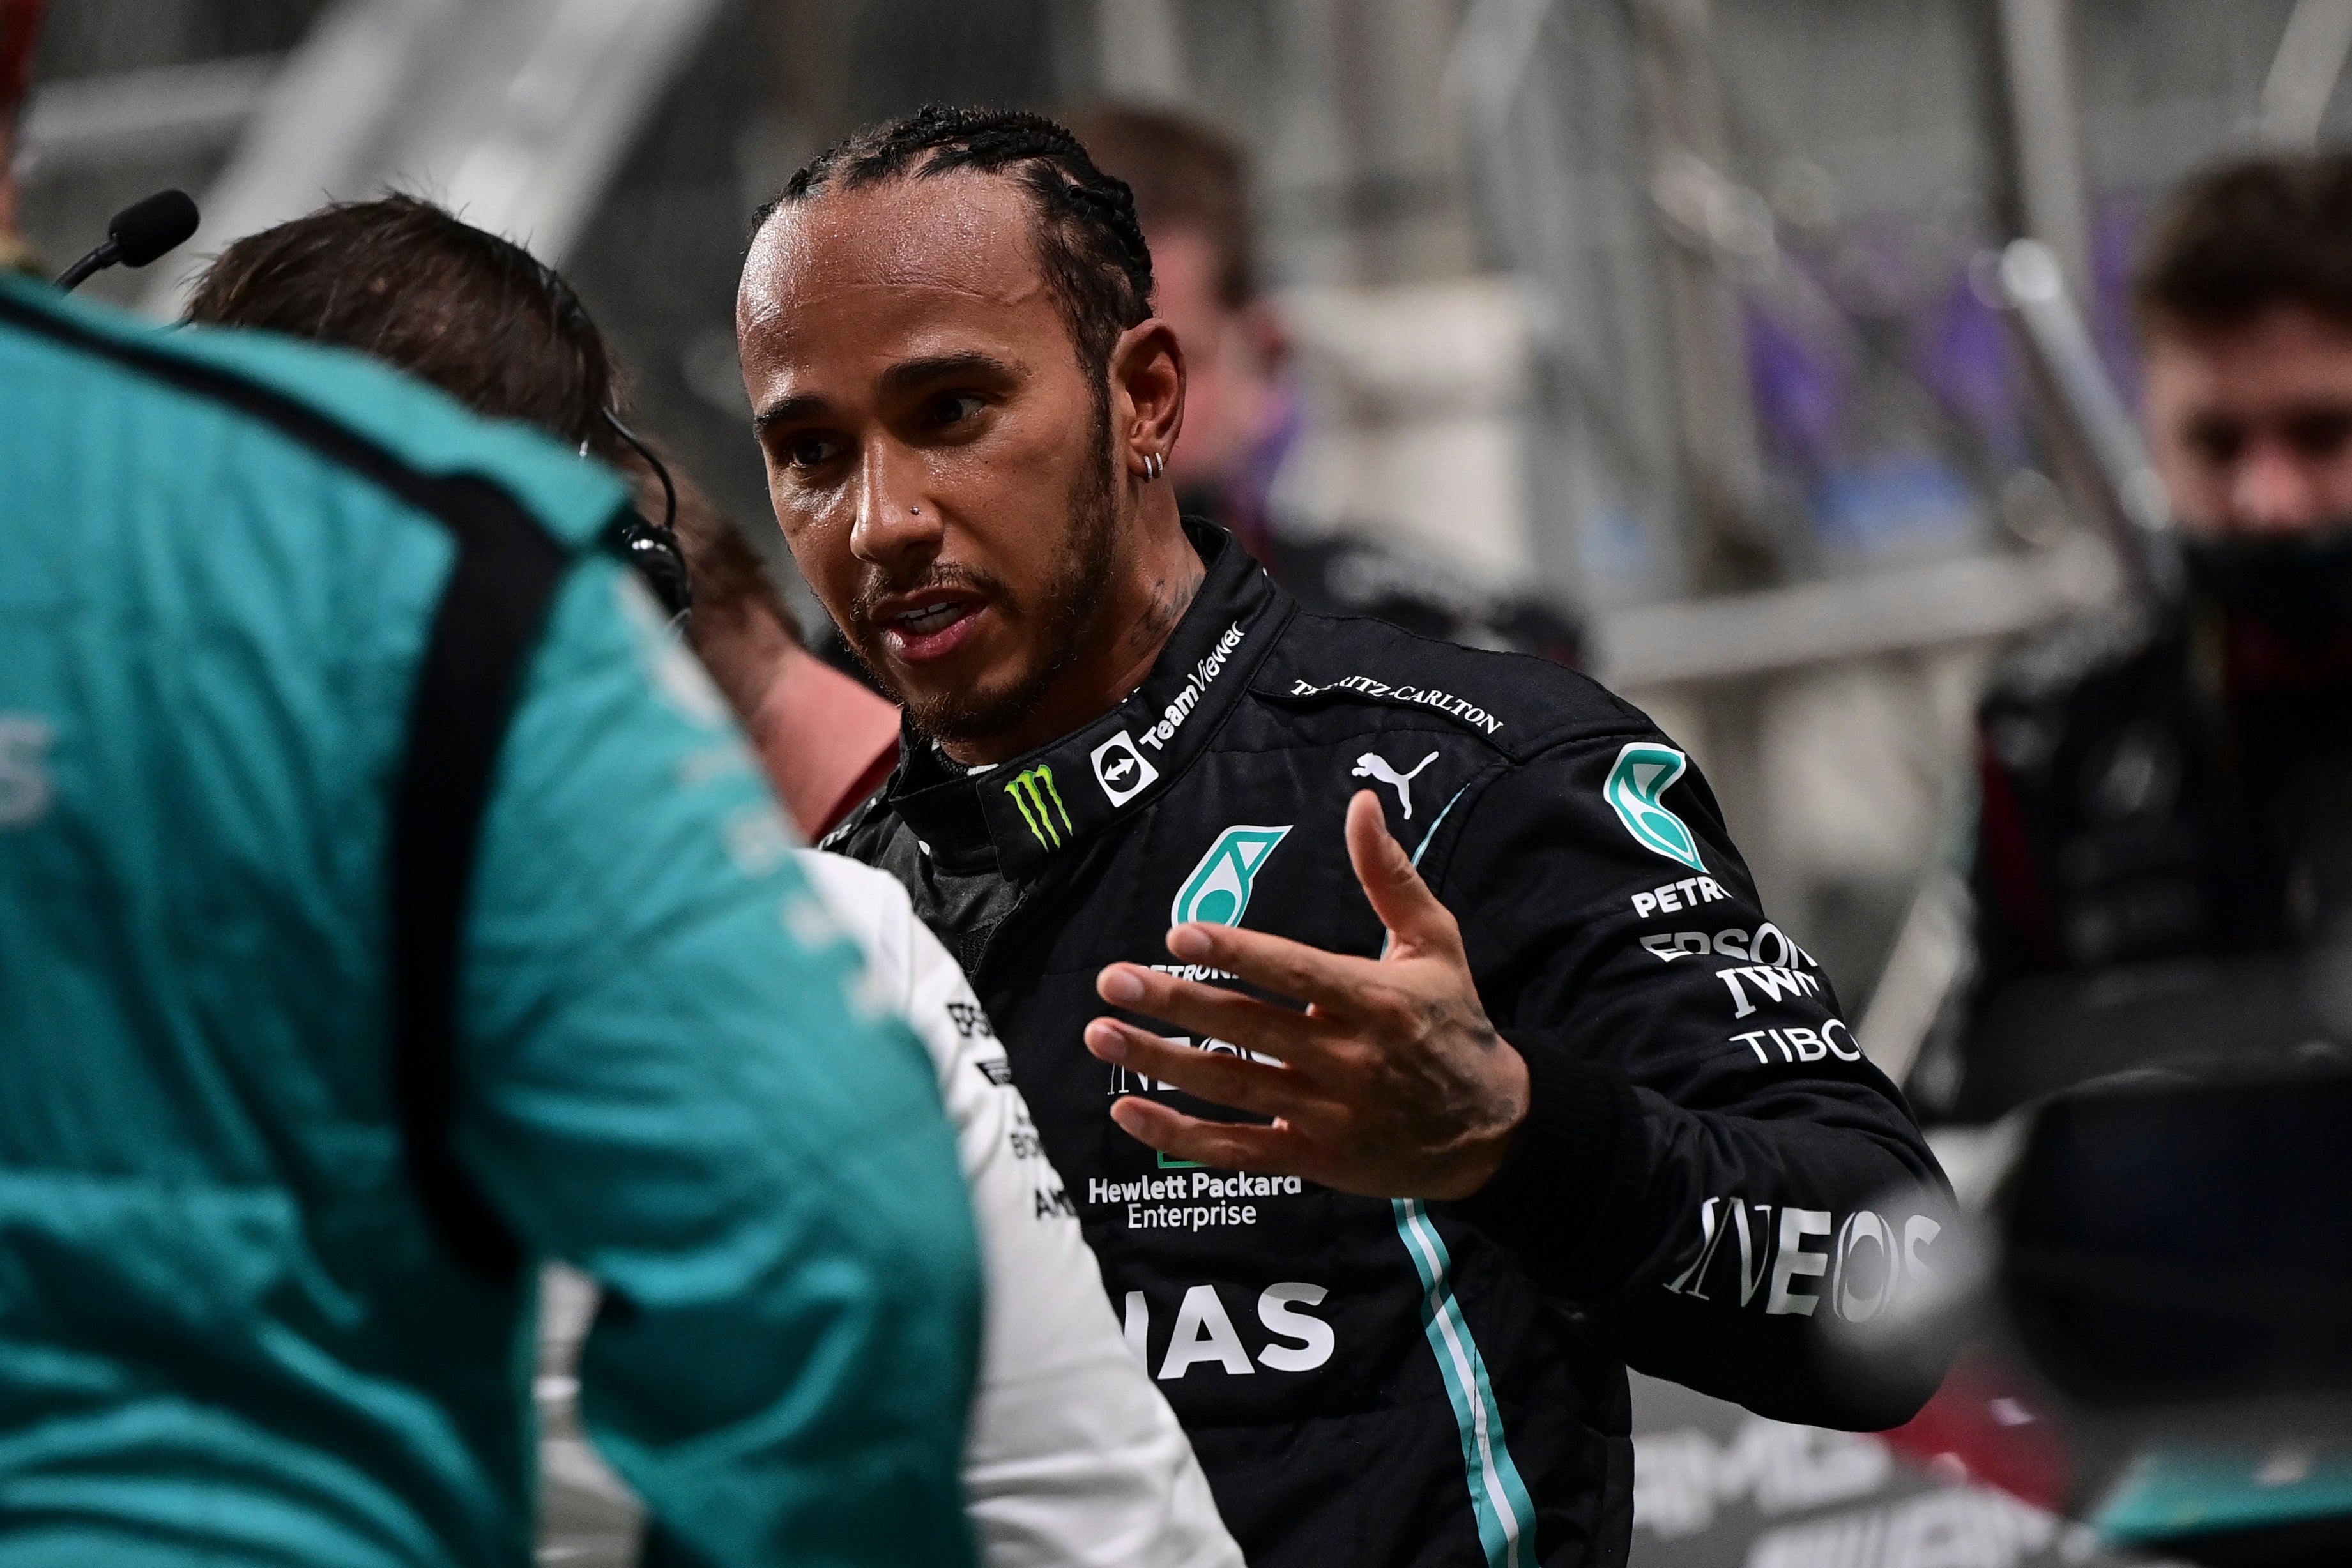 Hamilton prepares to restart the race (Andrej Isakovic/AP)